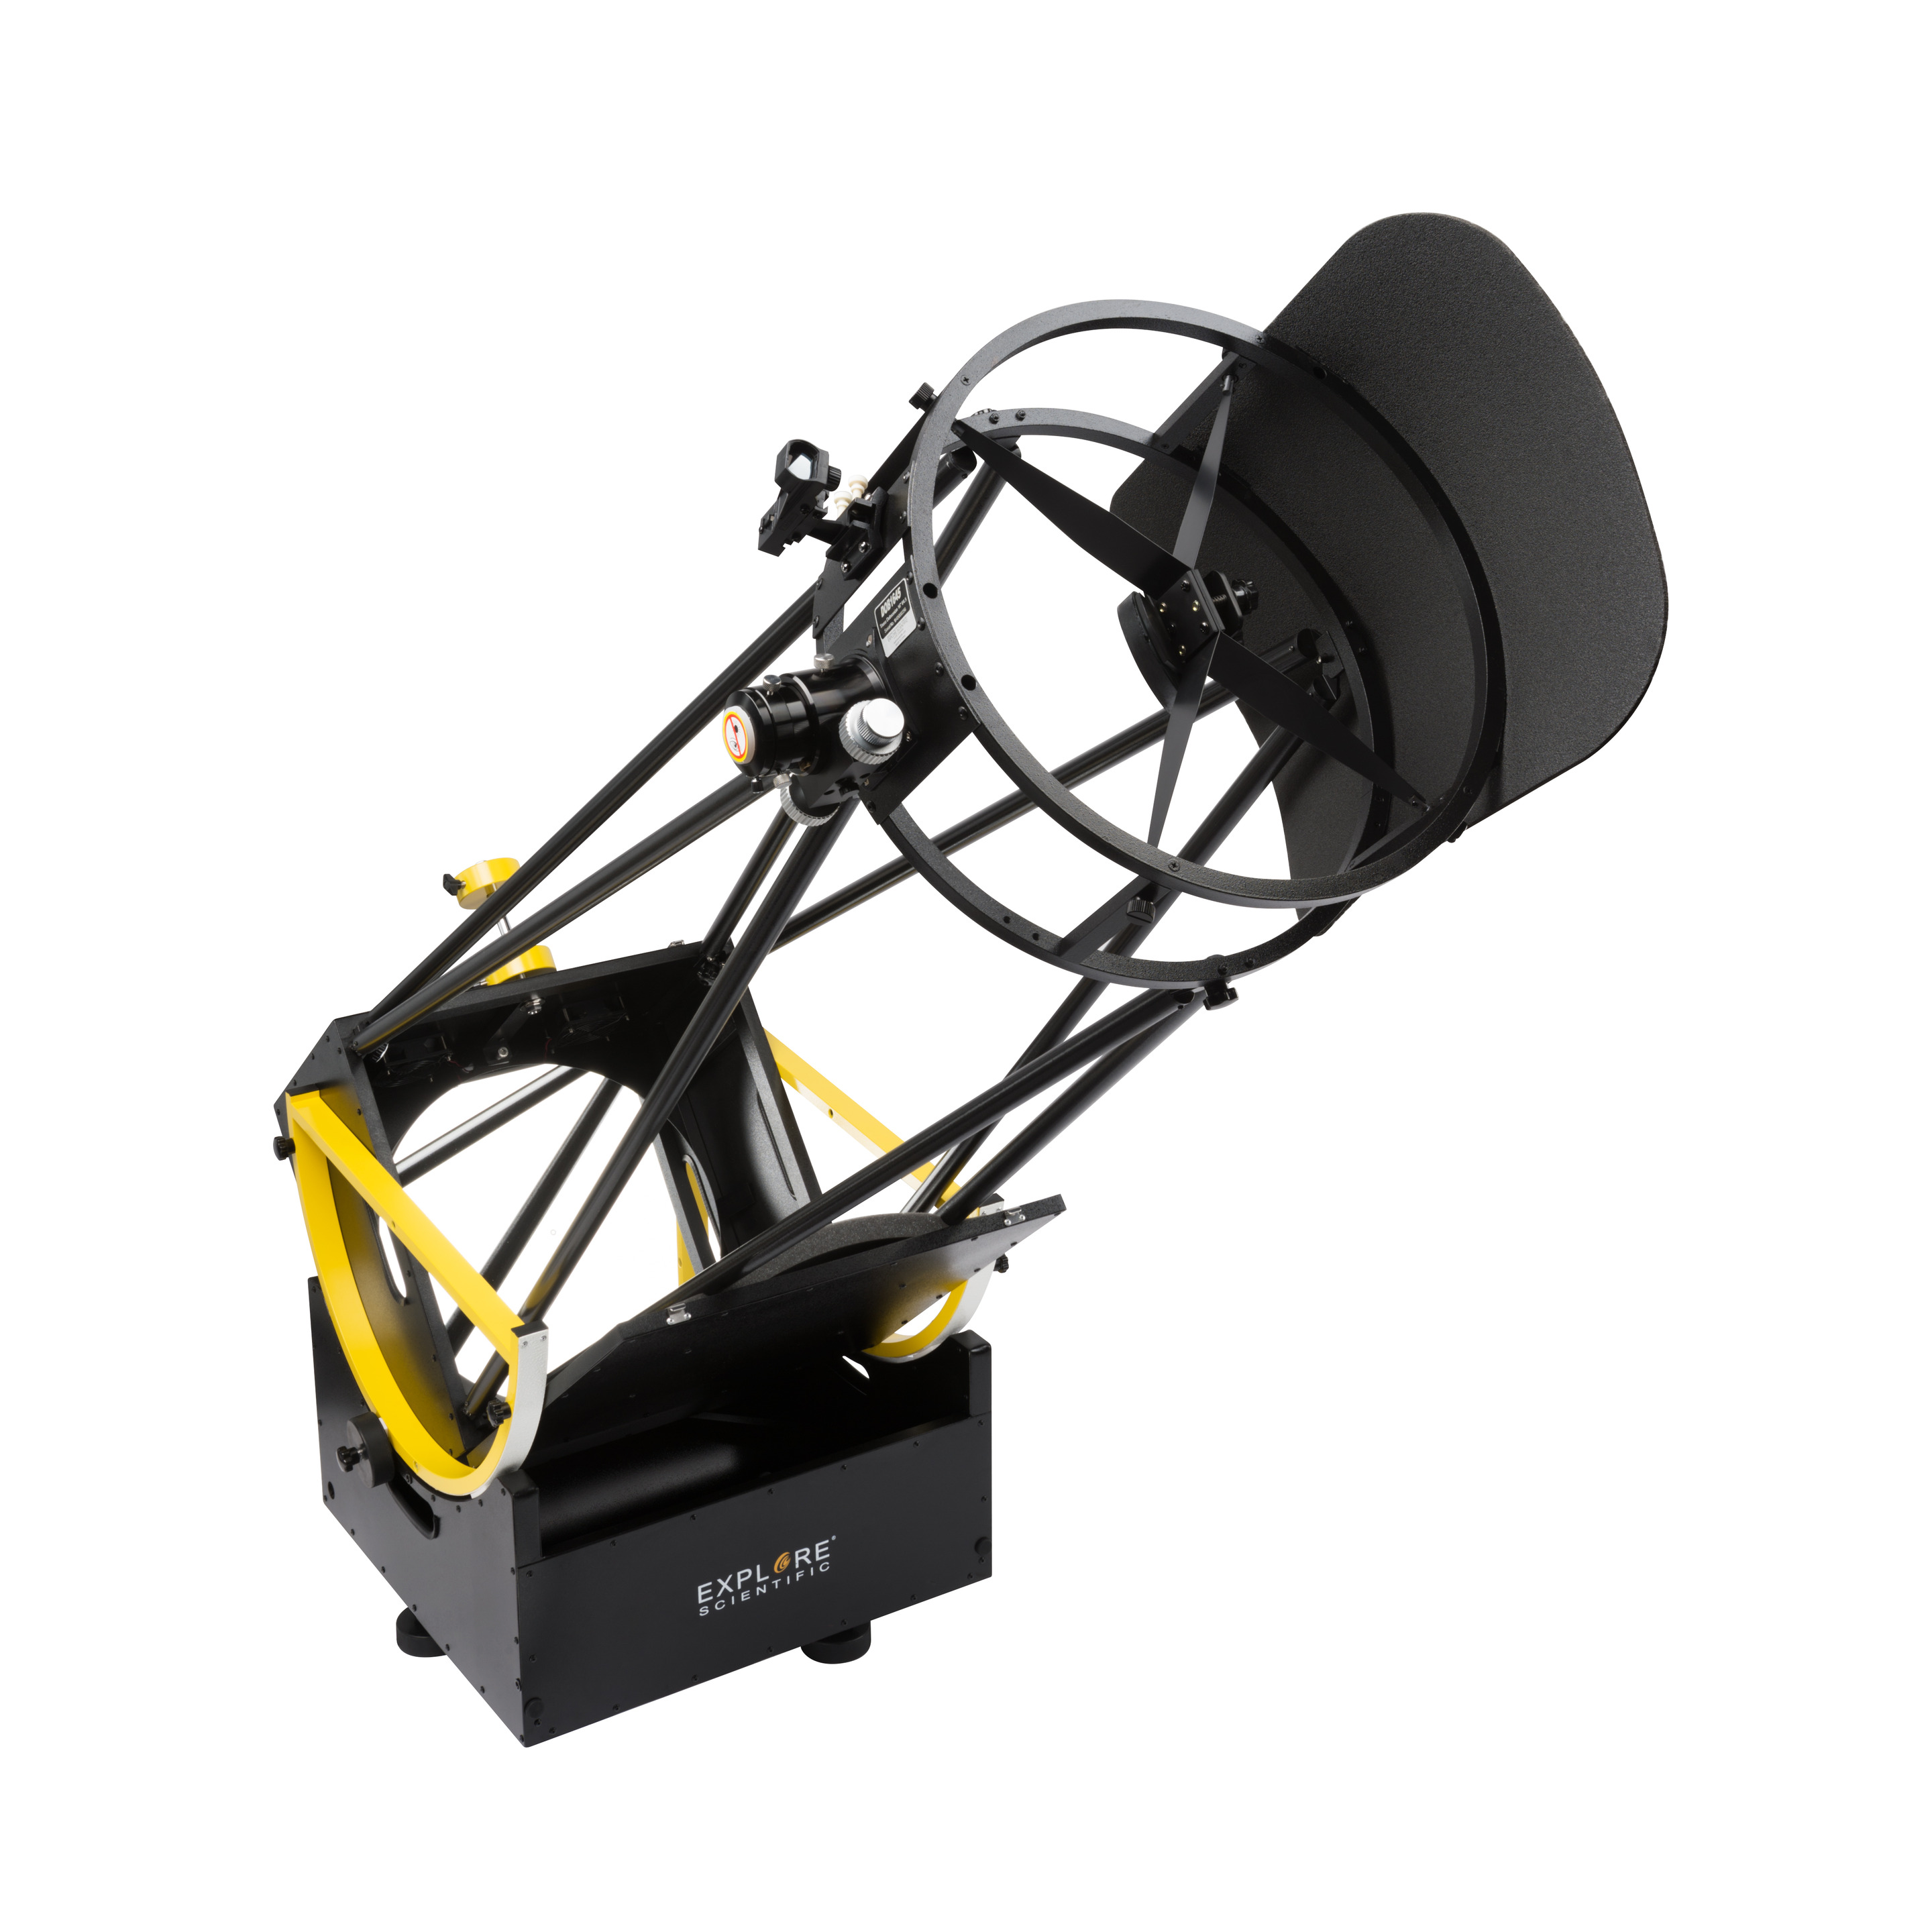 Telescopio Explore Scientific Ultra Light Dobsonian 406mm Generación Ii - negro - 